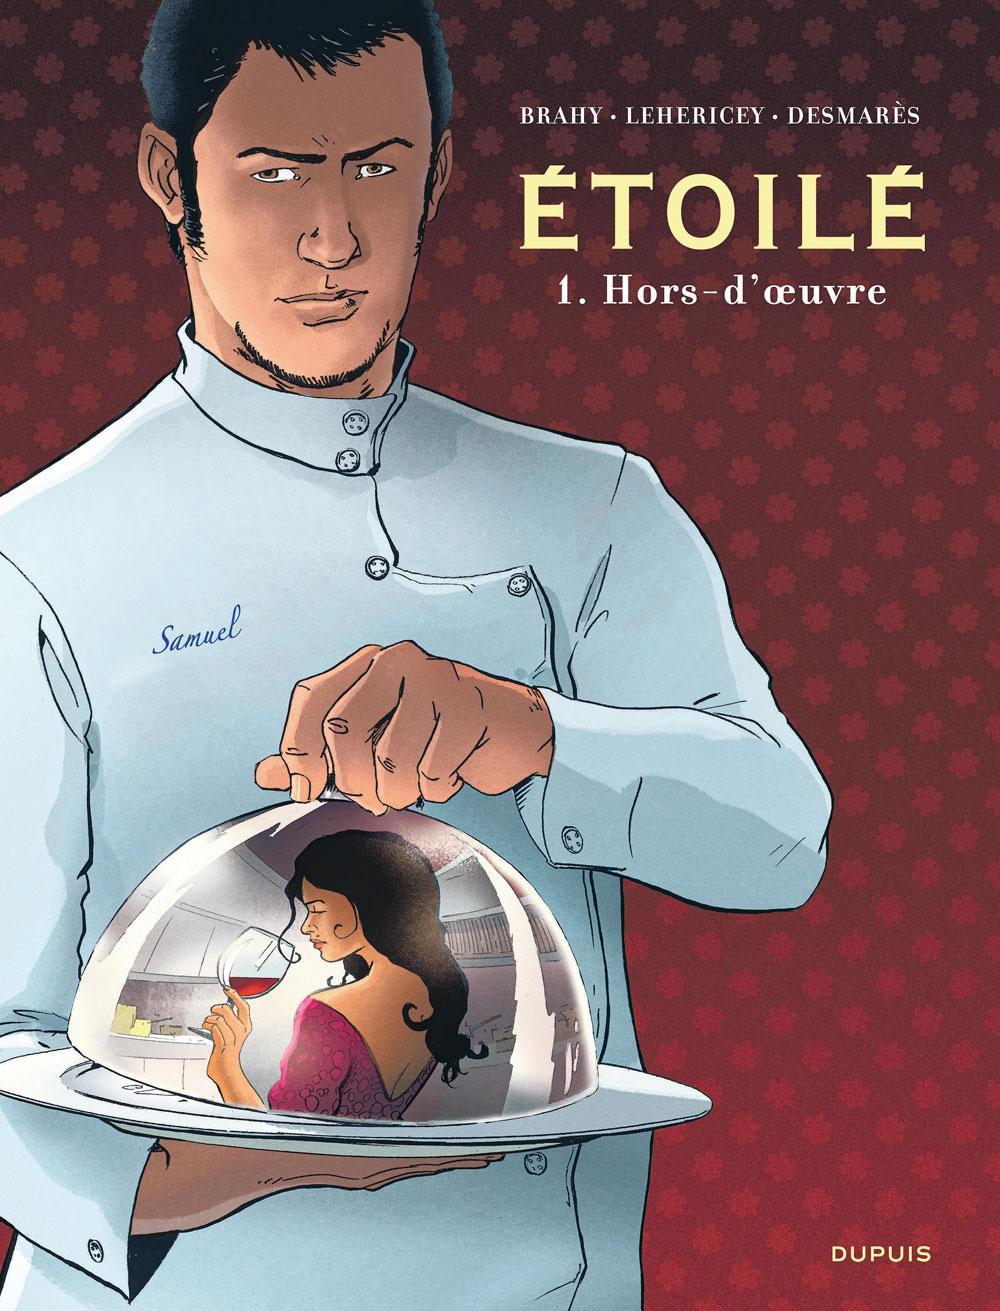 Etoilé, tome 1 - Hors-d'oeuvre, par Fanny Desmarès, Delphine Lehericey et Luc Brahy, Dupuis, 52 pages.